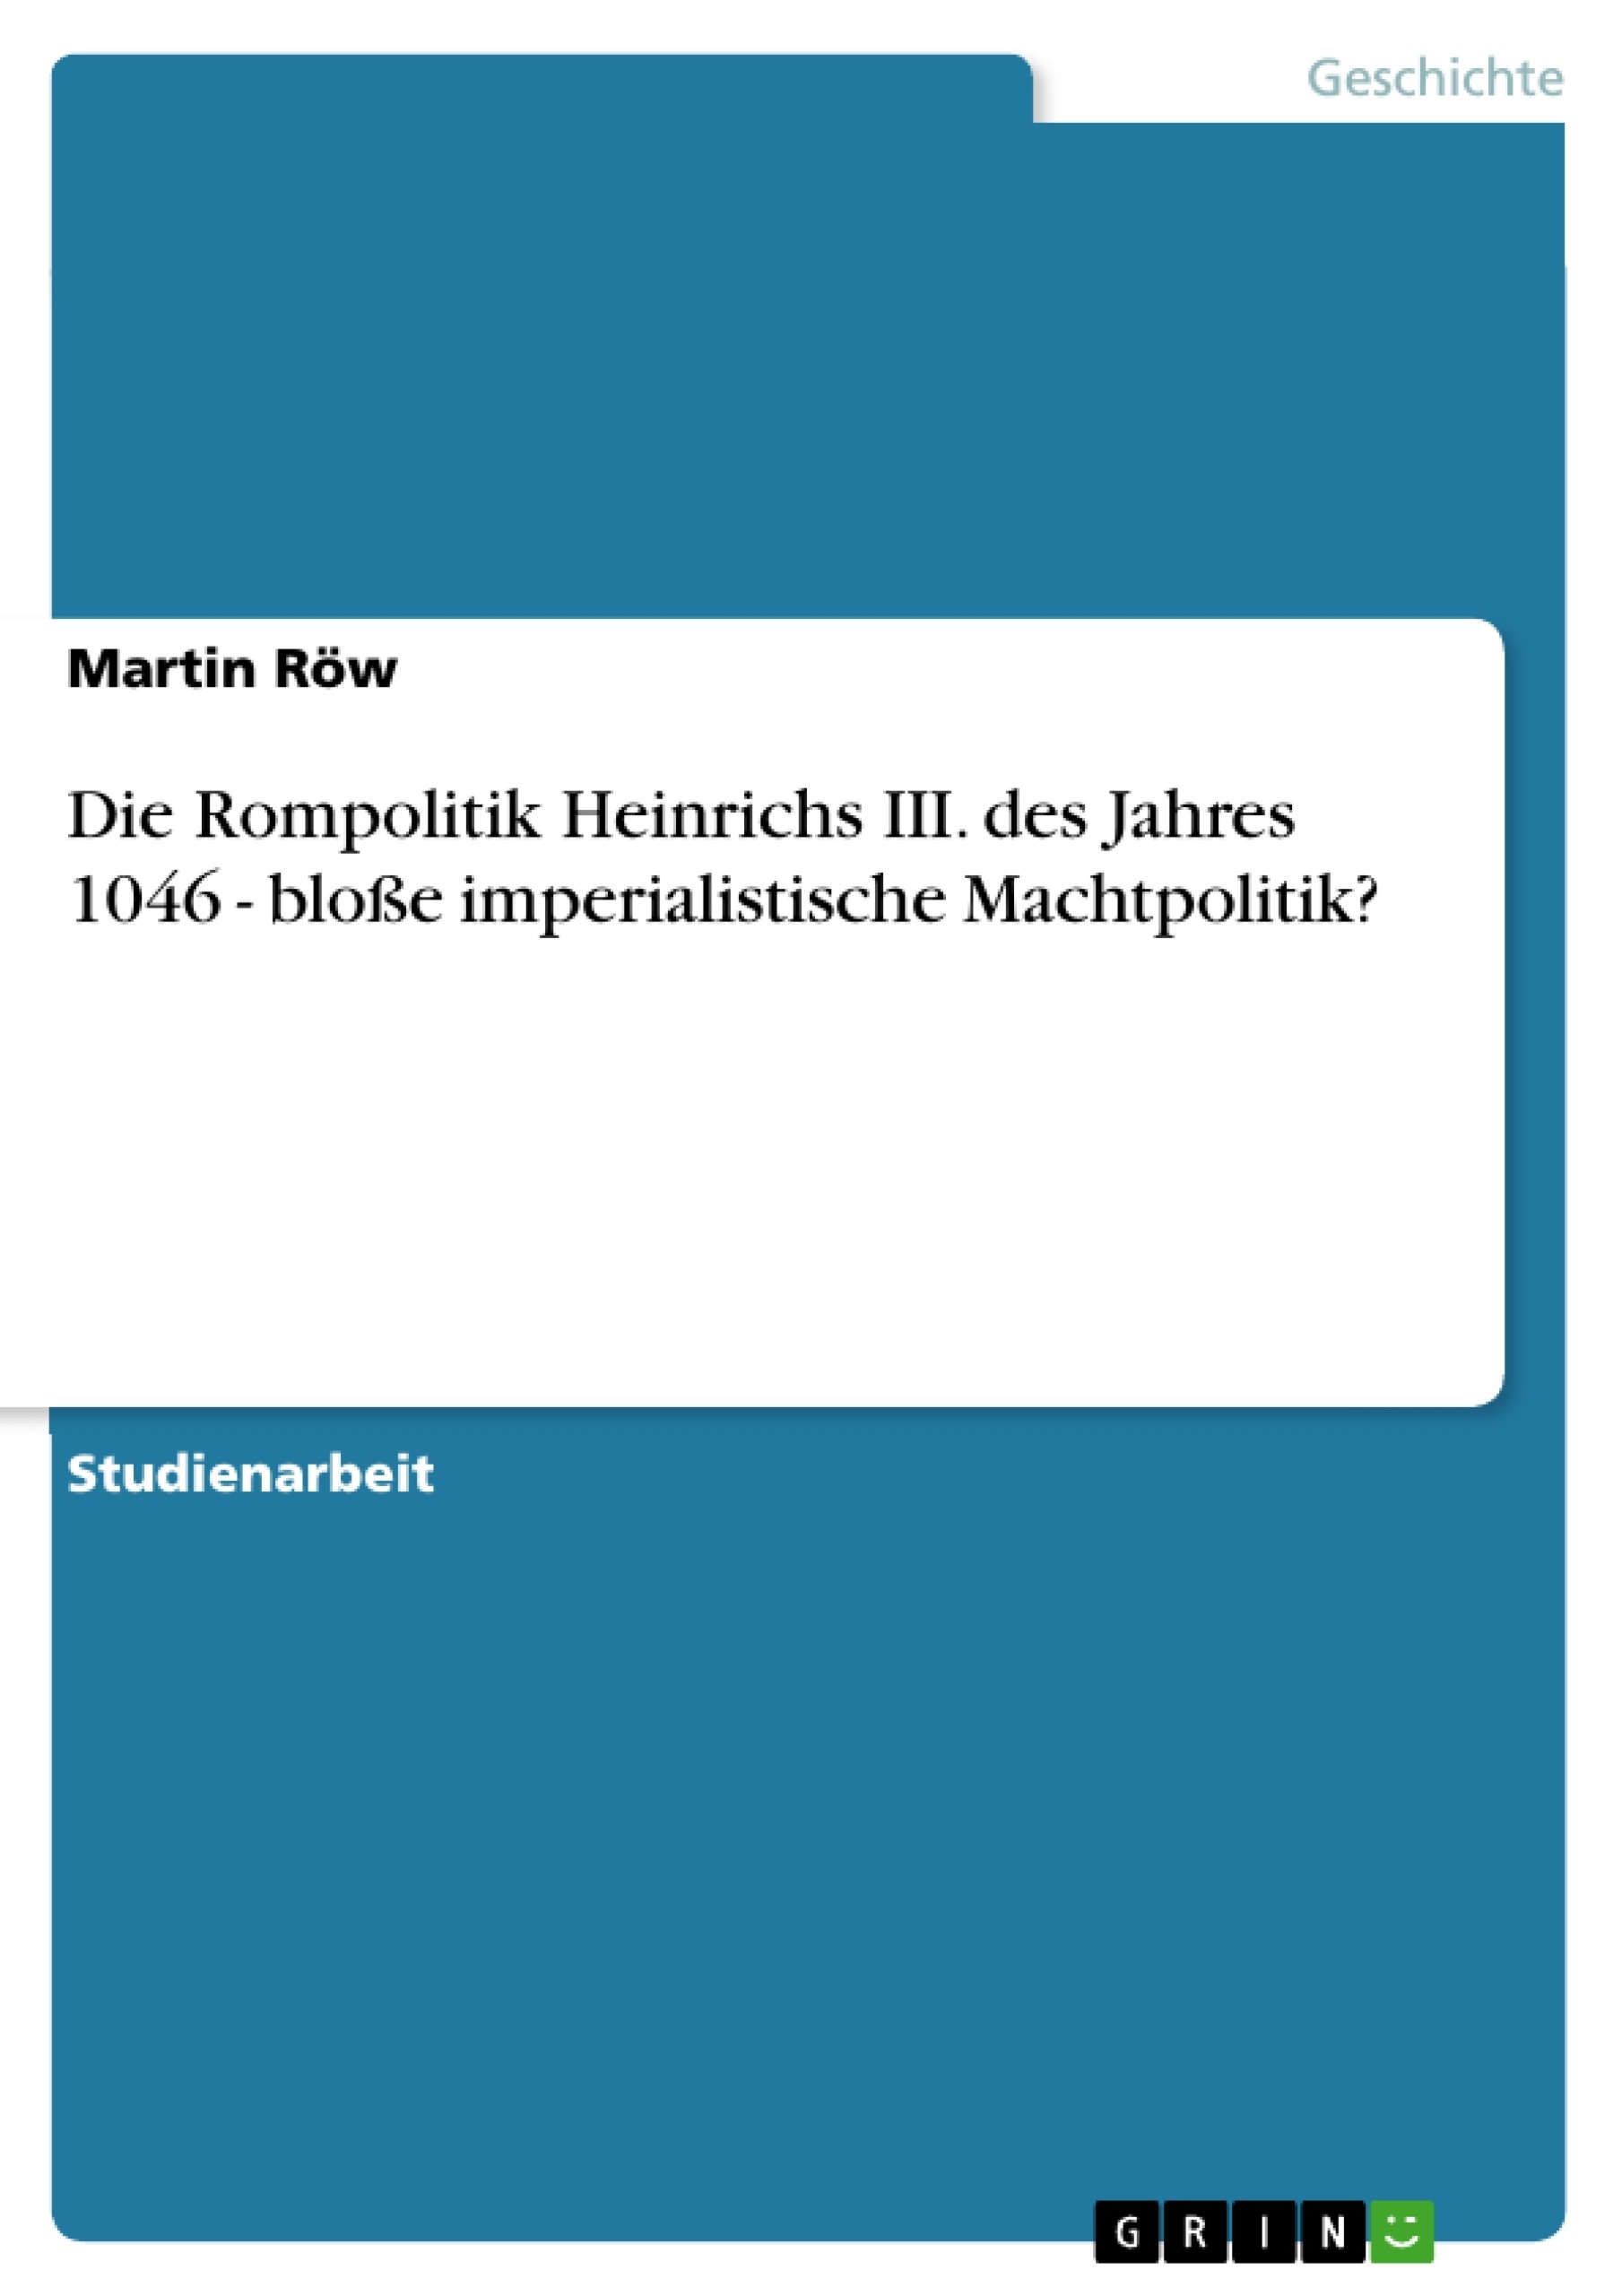 Title: Die Rompolitik Heinrichs III. des Jahres 1046 - bloße imperialistische Machtpolitik?